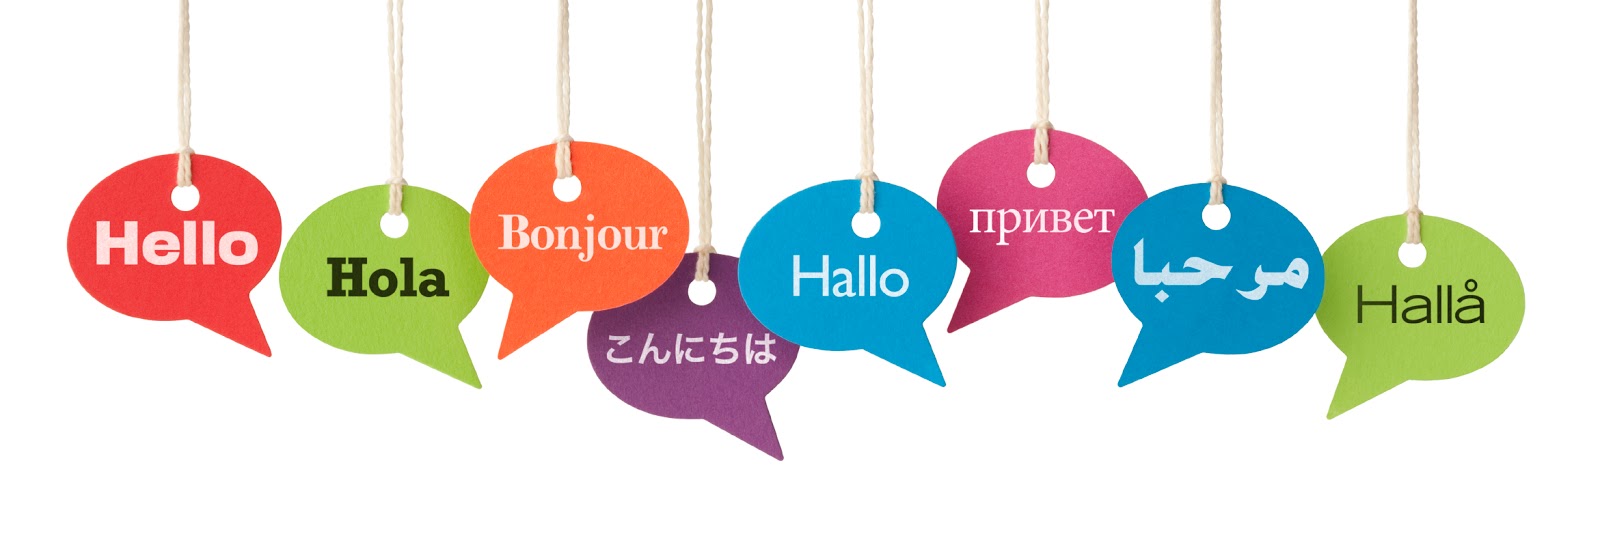 Znalezione obrazy dla zapytania nauka języków obcych